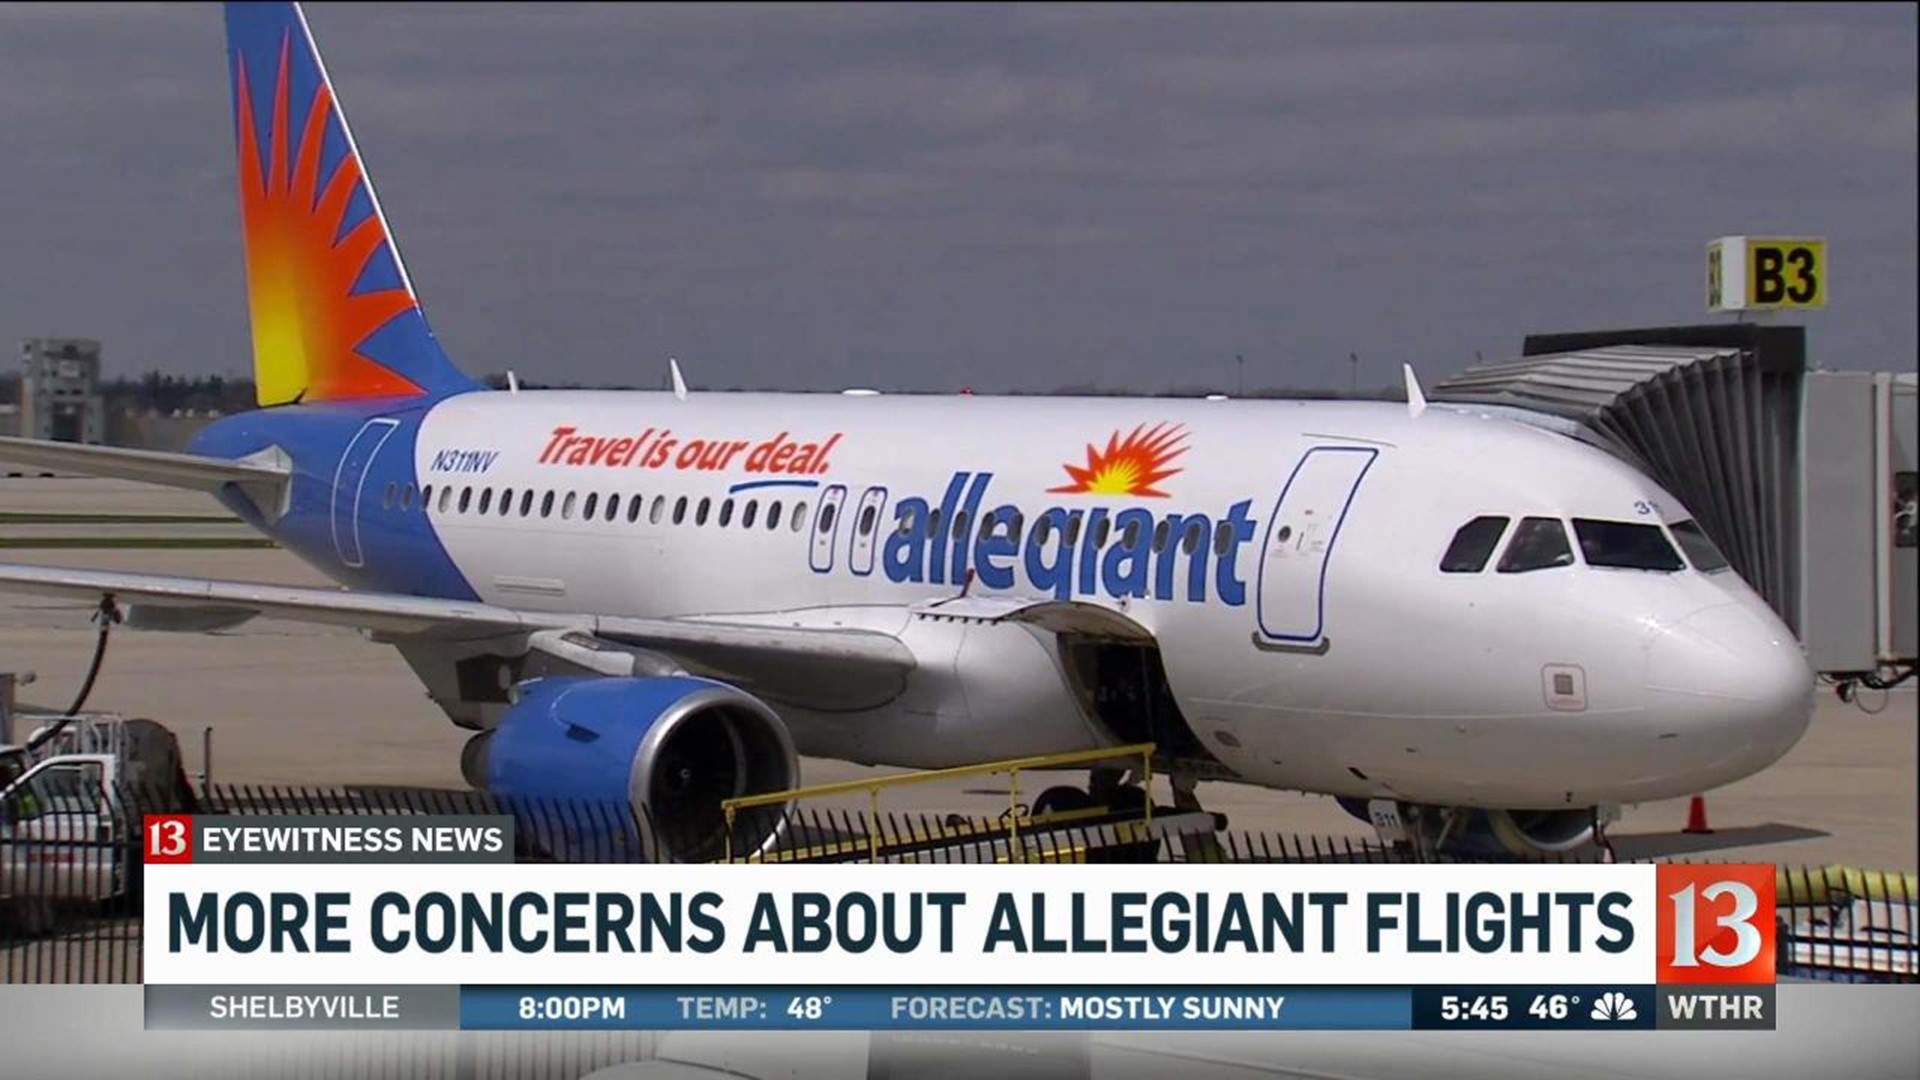 Concerns about Allegiant flights